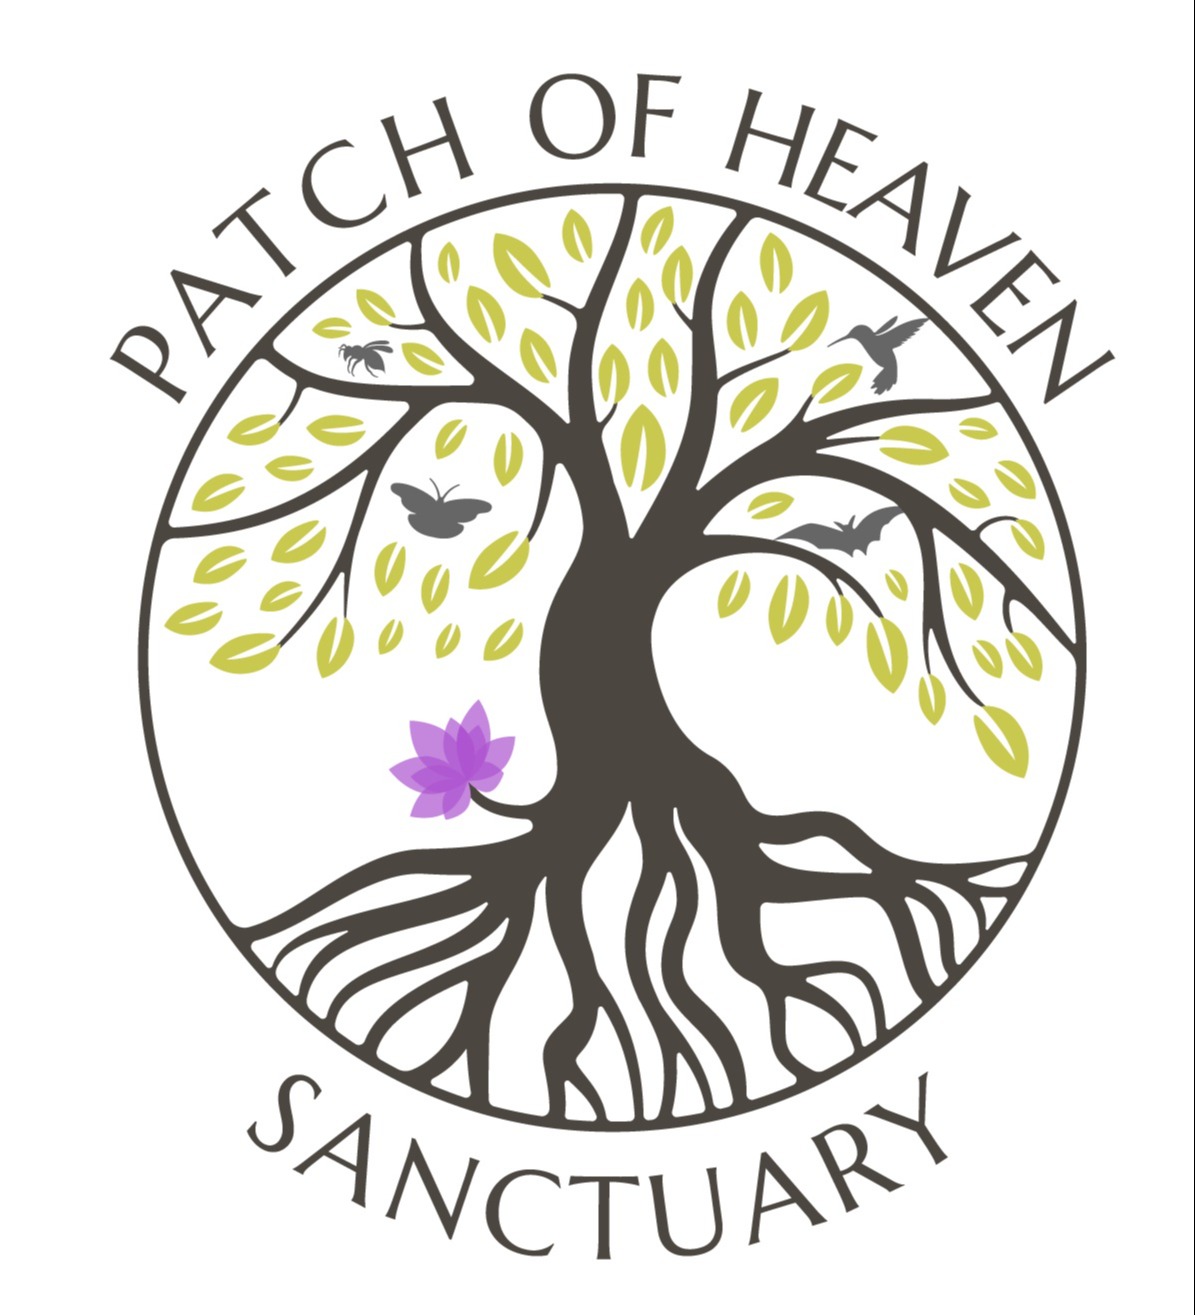 Patch Of Heaven Sanctuary logo